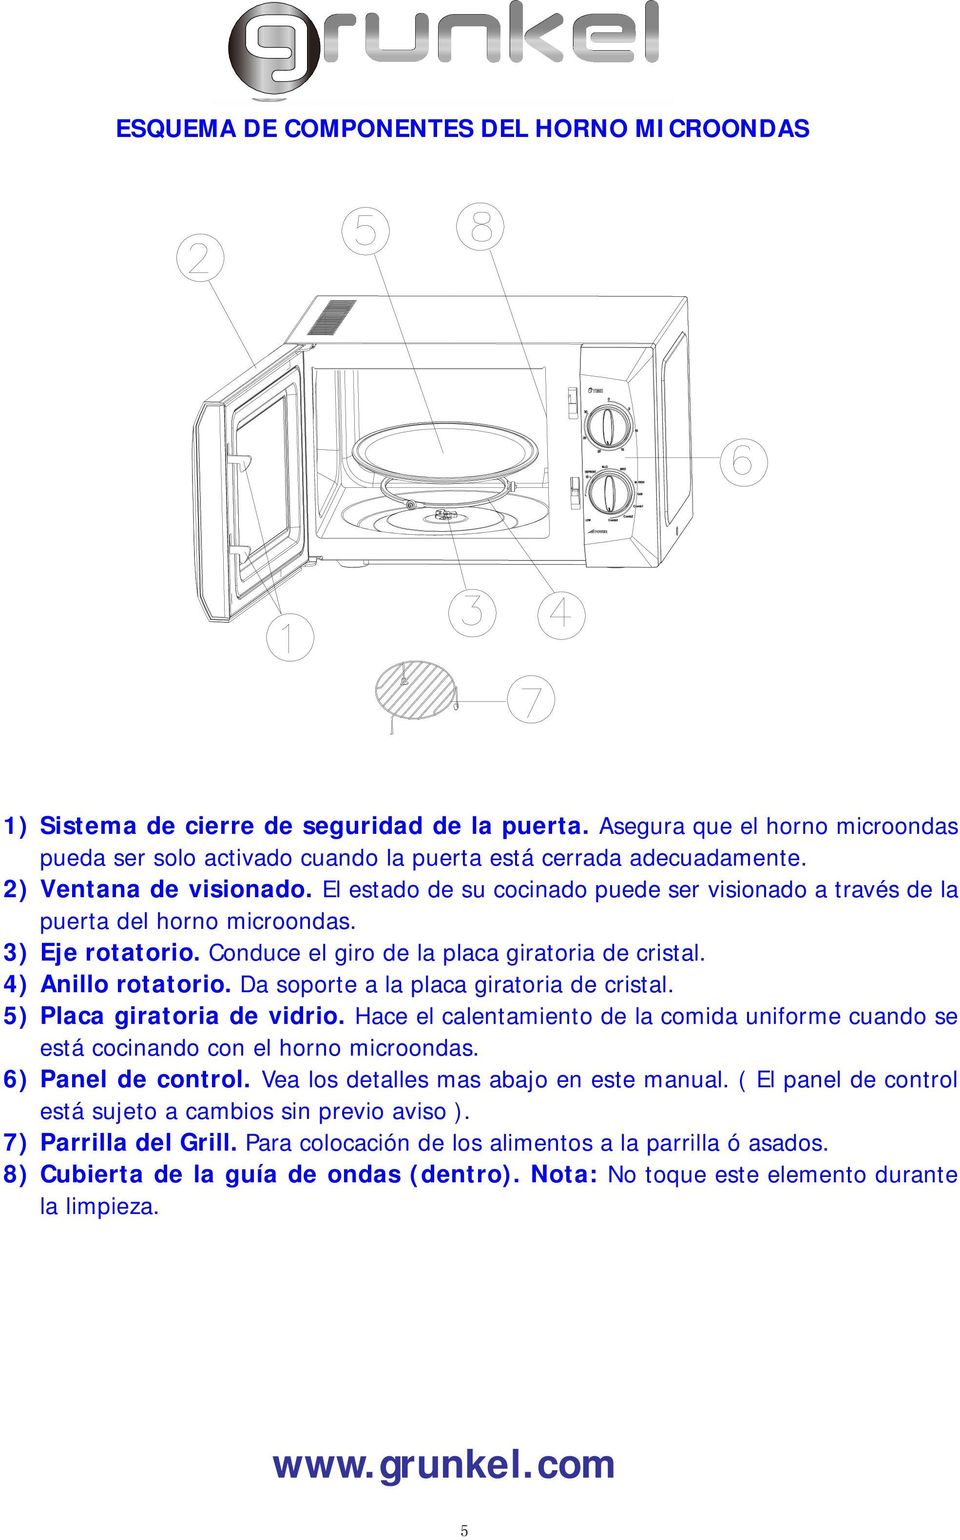 4) Anillo rotatorio. Da soporte a la placa giratoria de cristal. 5) Placa giratoria de vidrio. Hace el calentamiento de la comida uniforme cuando se está cocinando con el horno microondas.